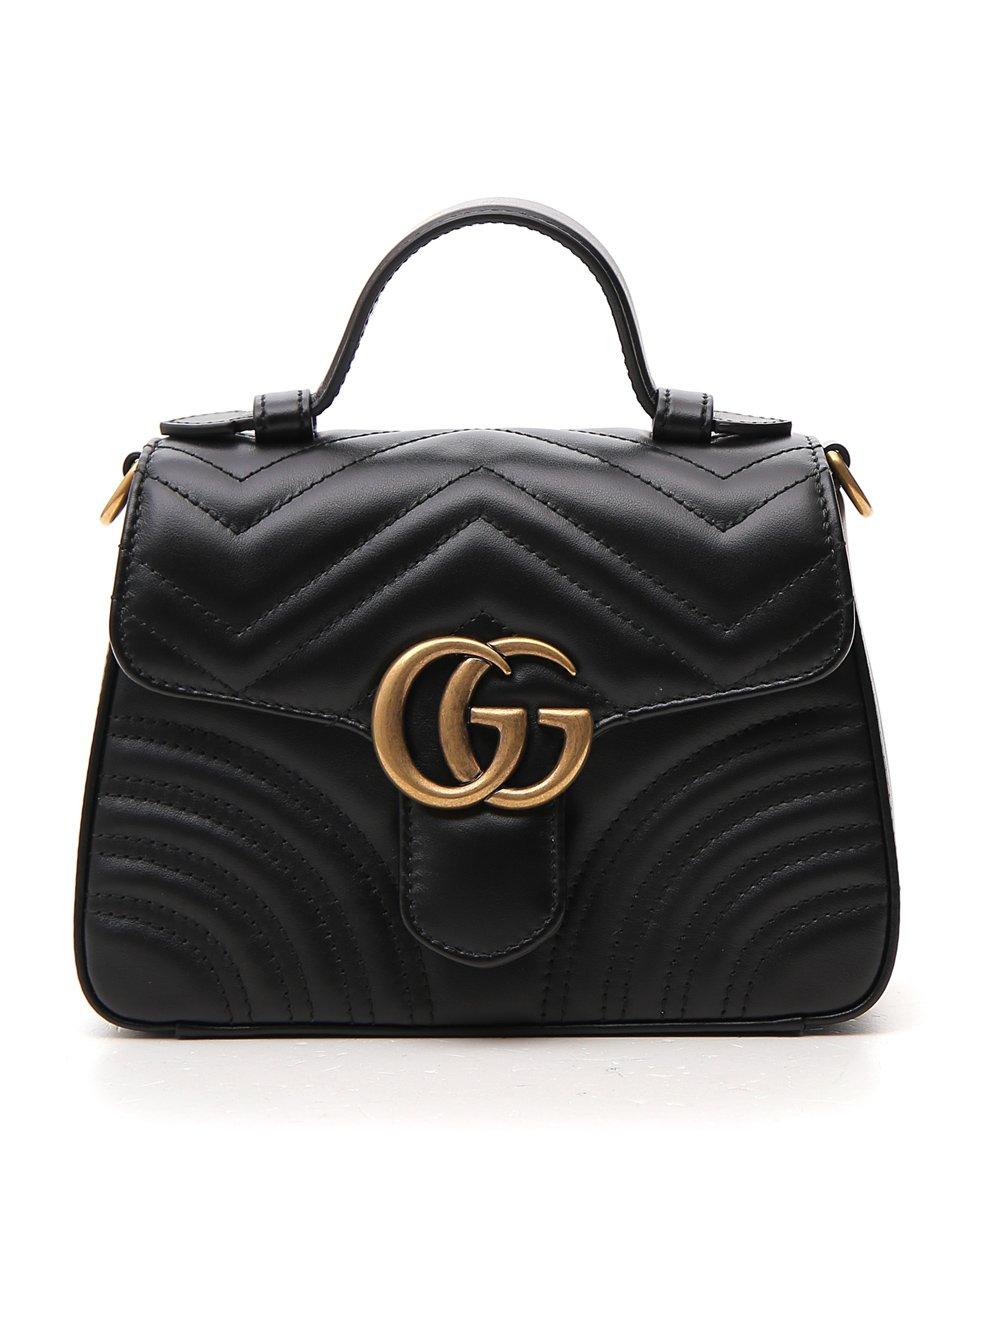 Gucci Mini GG Marmont Bag in Black